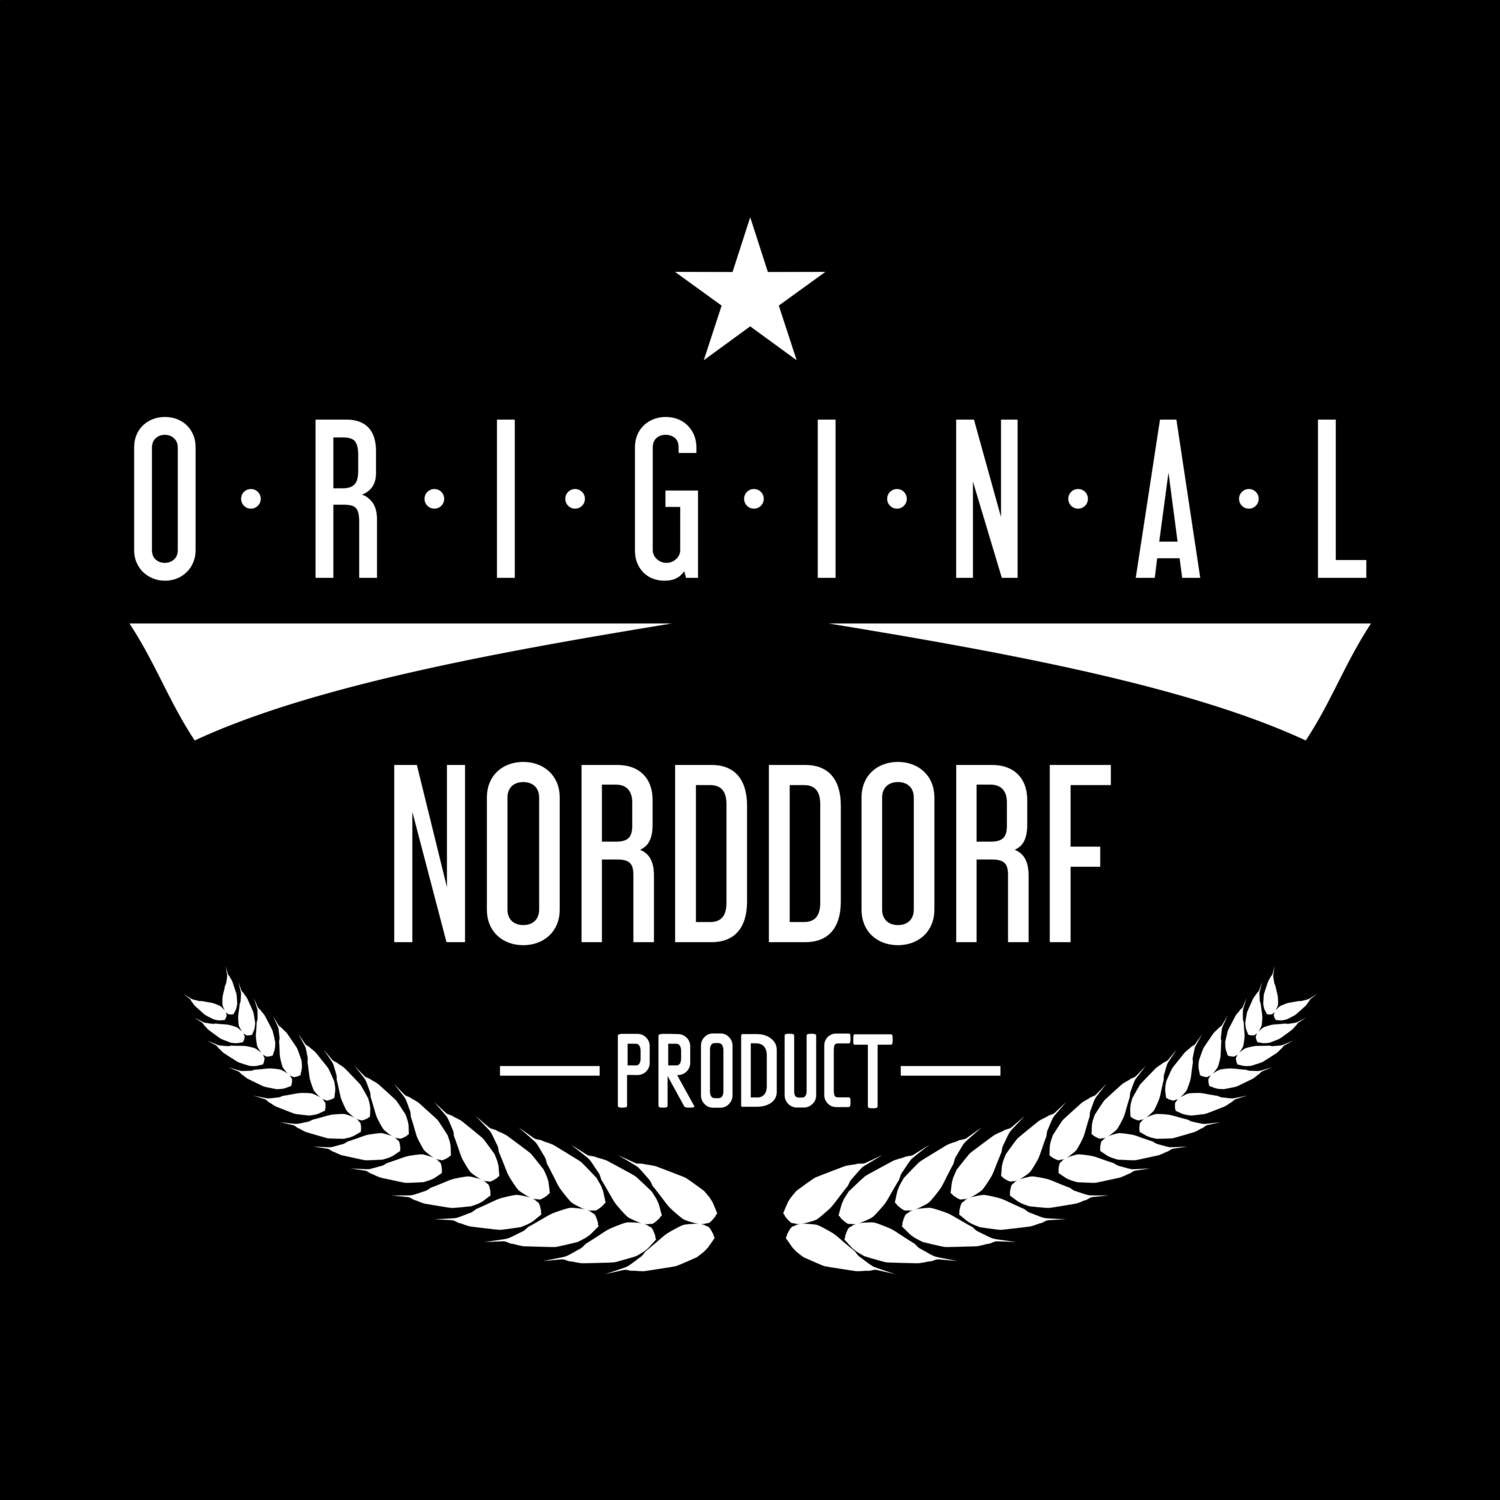 Norddorf T-Shirt »Original Product«